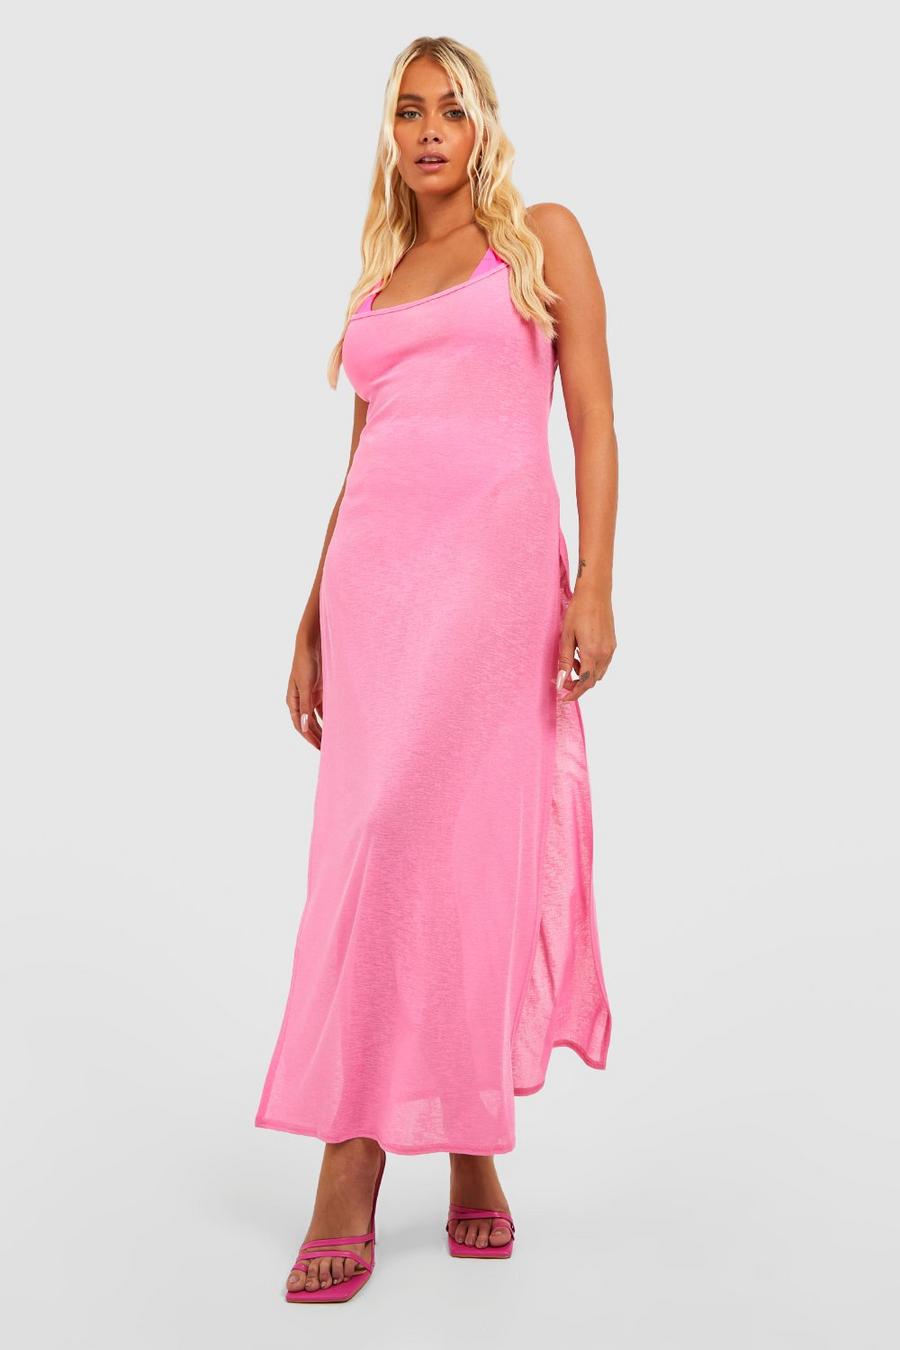 Hot pink rose Burnout Jersey Strappy Split Beach Dress